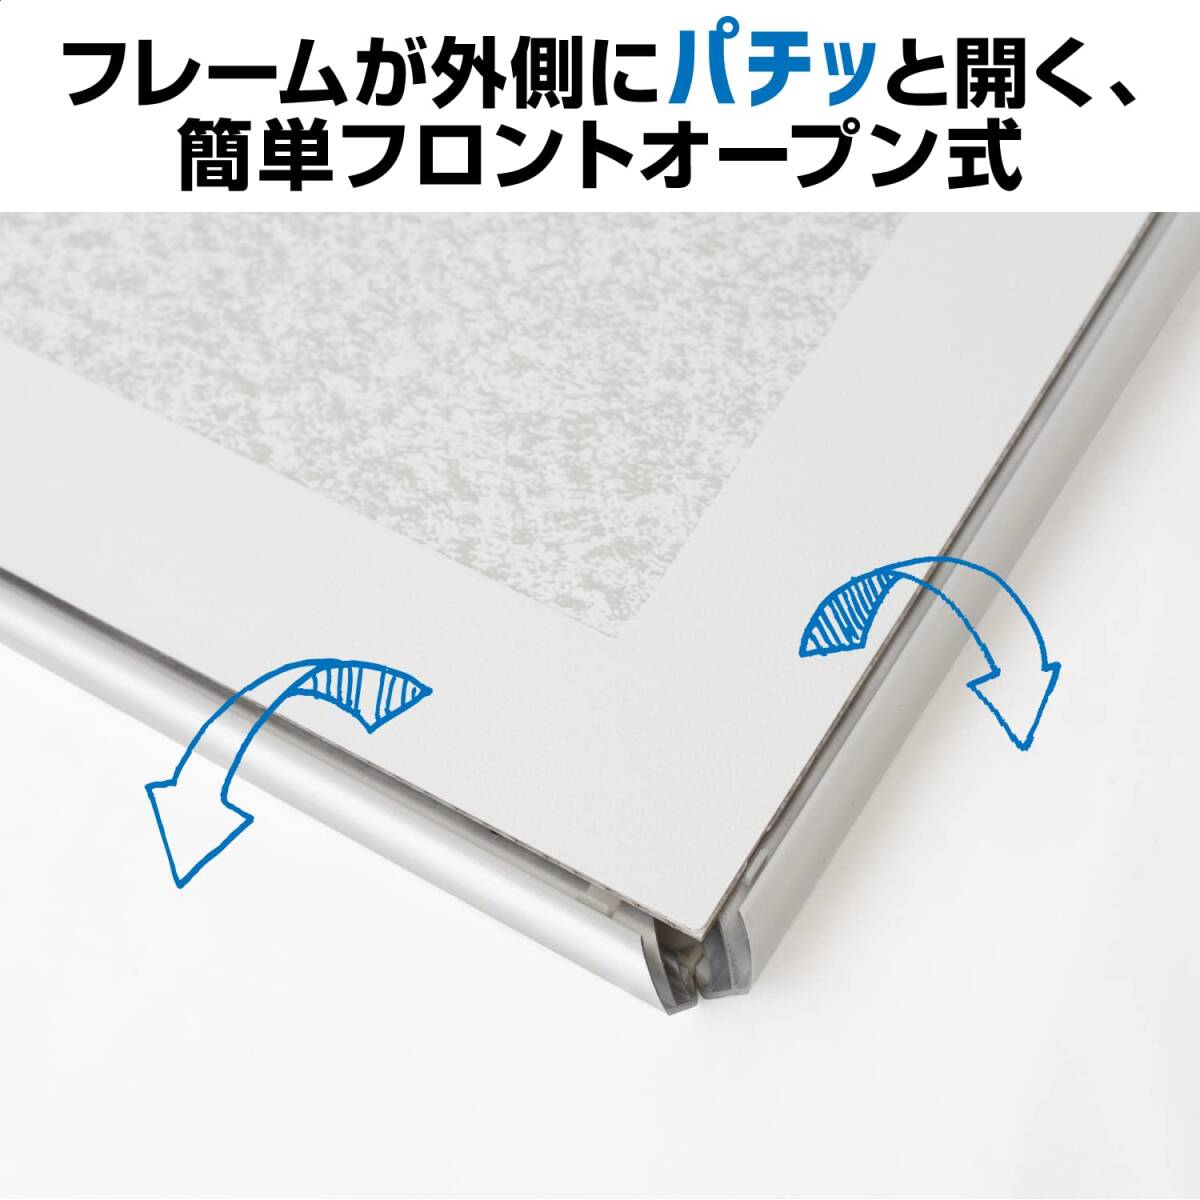 Kenko 額縁 パチット 4切 0.4mm極薄PETシート採用 アルミフレーム 日本製 APT-4_画像5